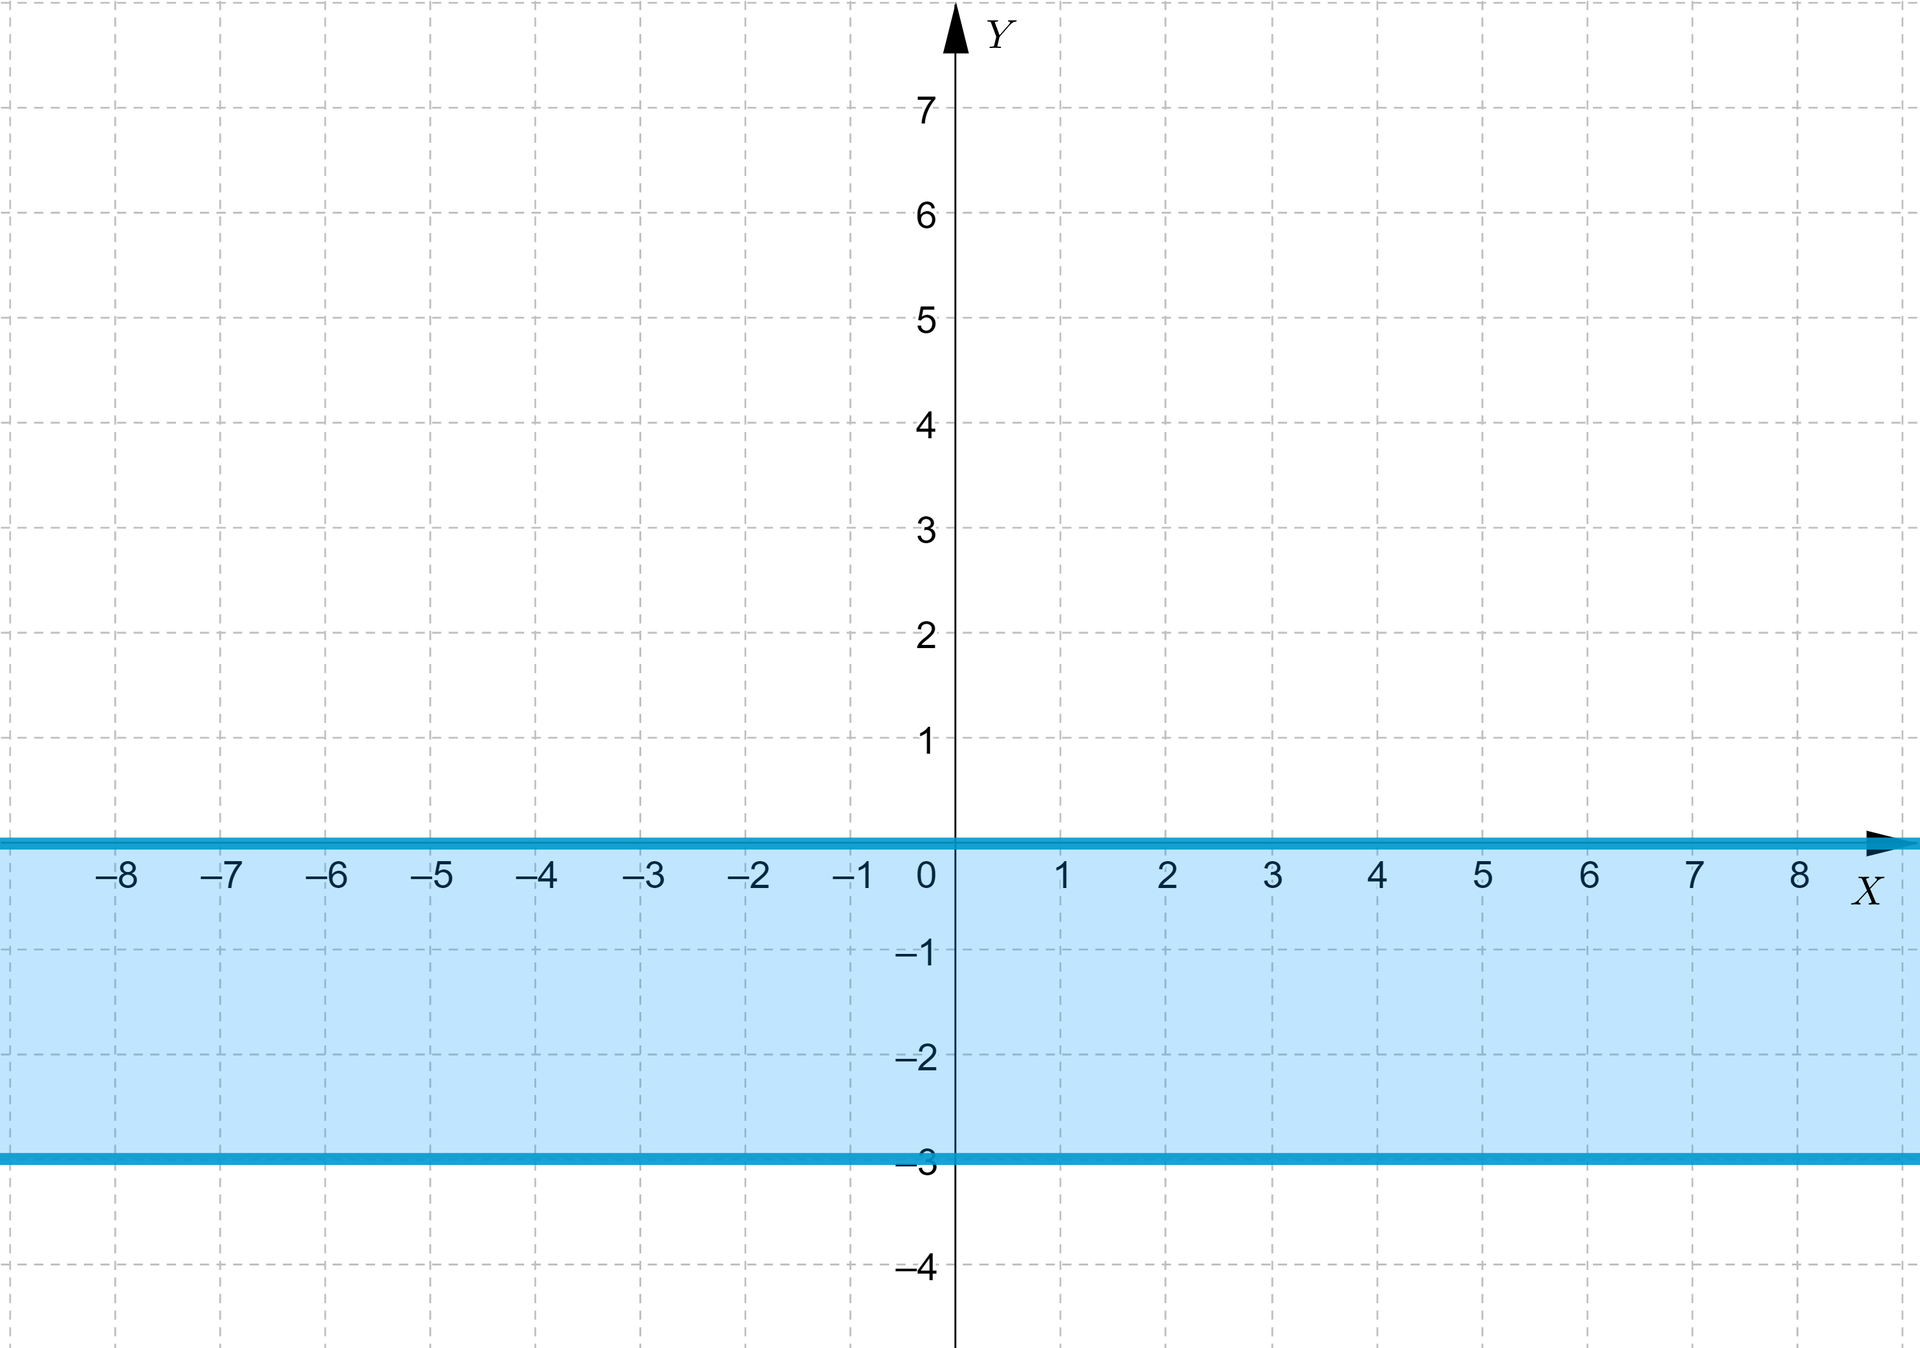   Wykres przedstawia linie poziome przerywane przecinające oś igrek w punkcie zero i w punkcie minus trzy, oraz obszar pomiędzy nimi.